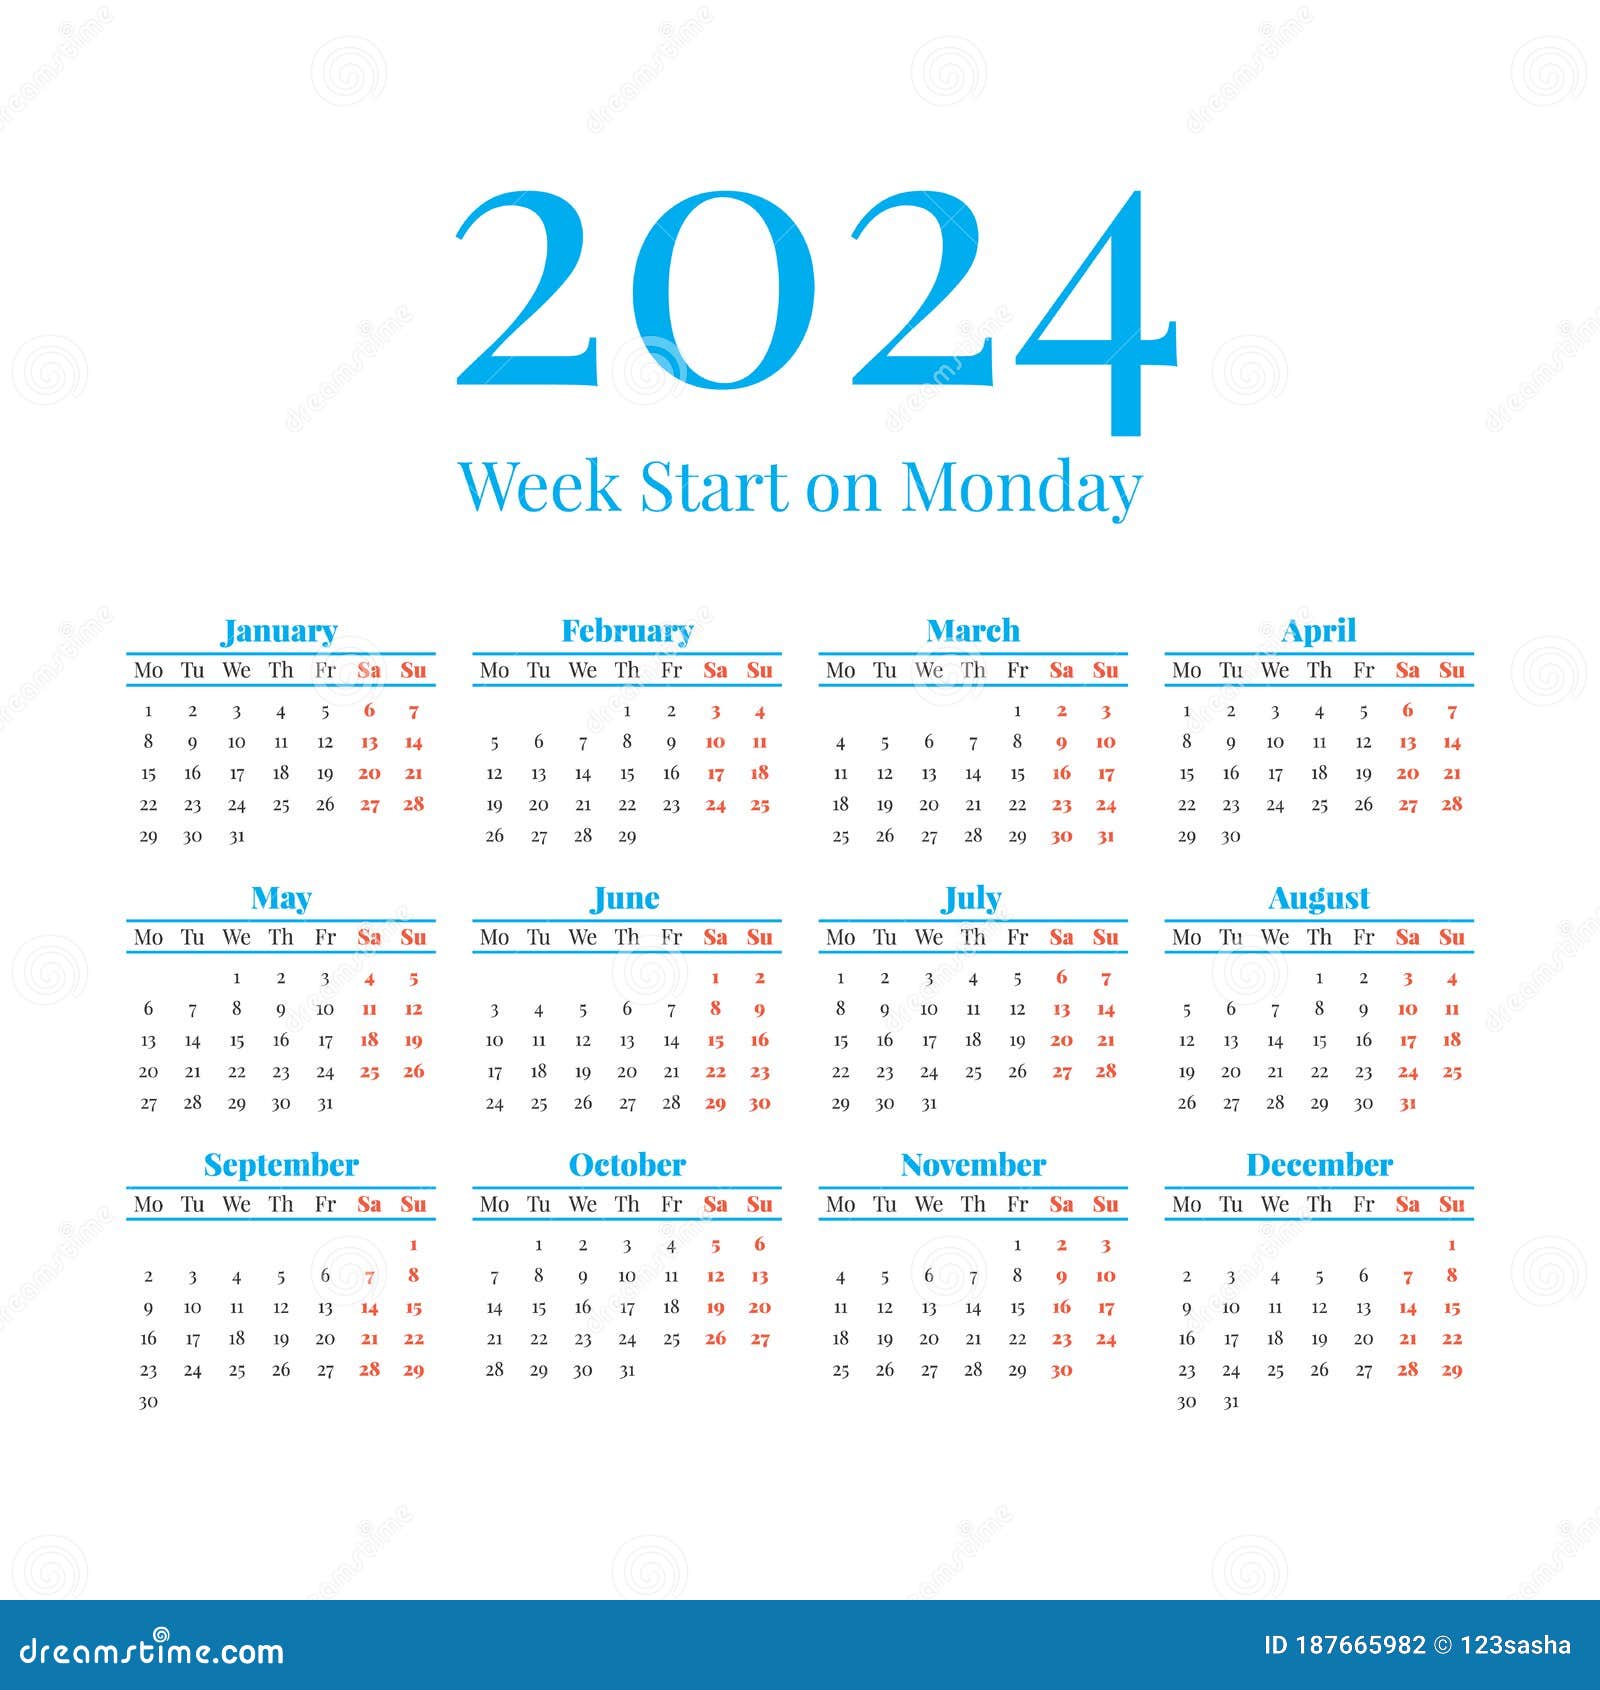 2023-calendar-weeks-summafinance